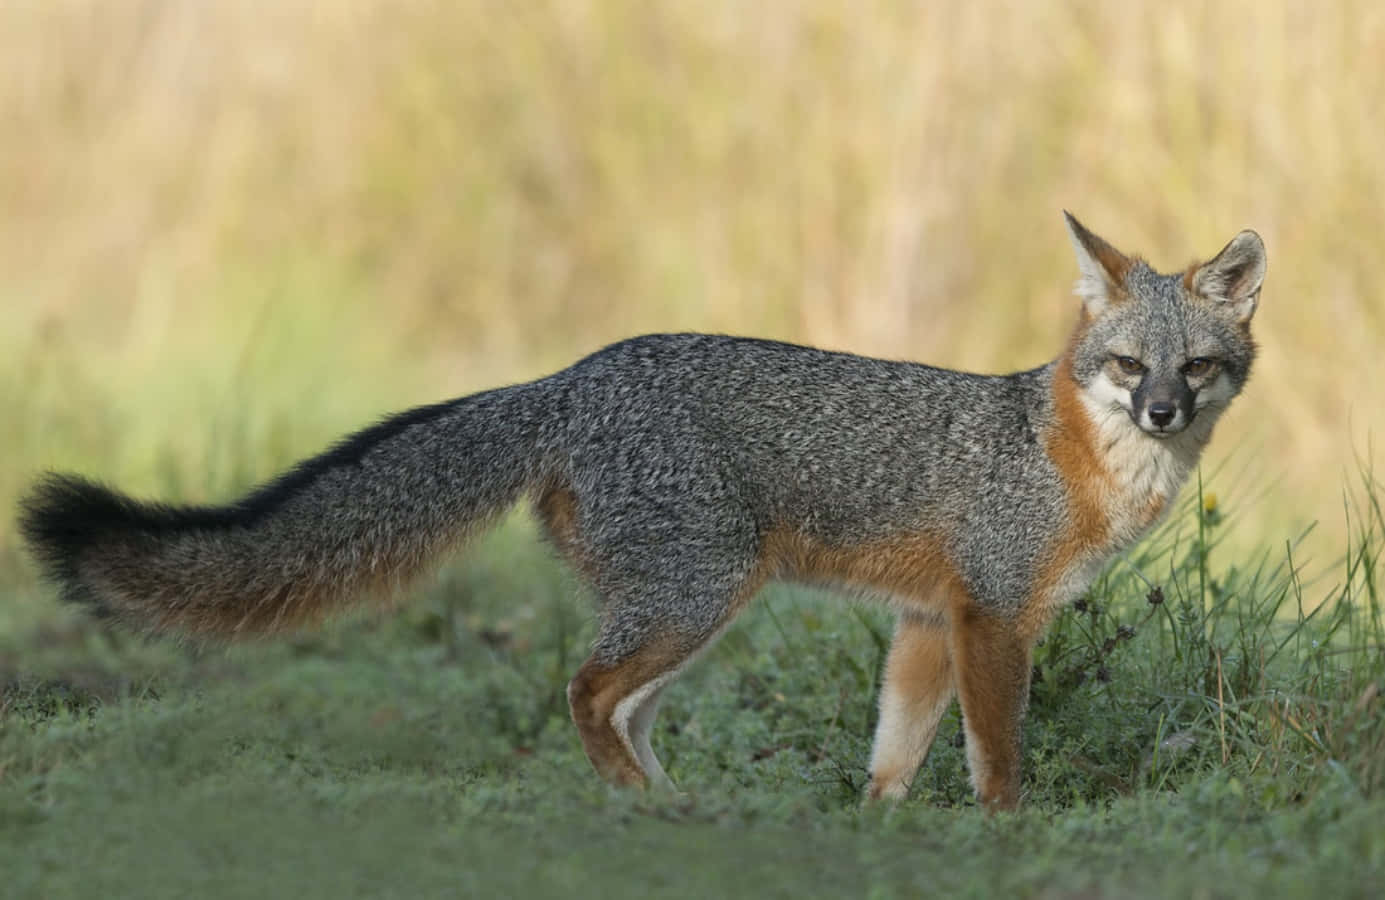 A Gray Fox exploring its habitat